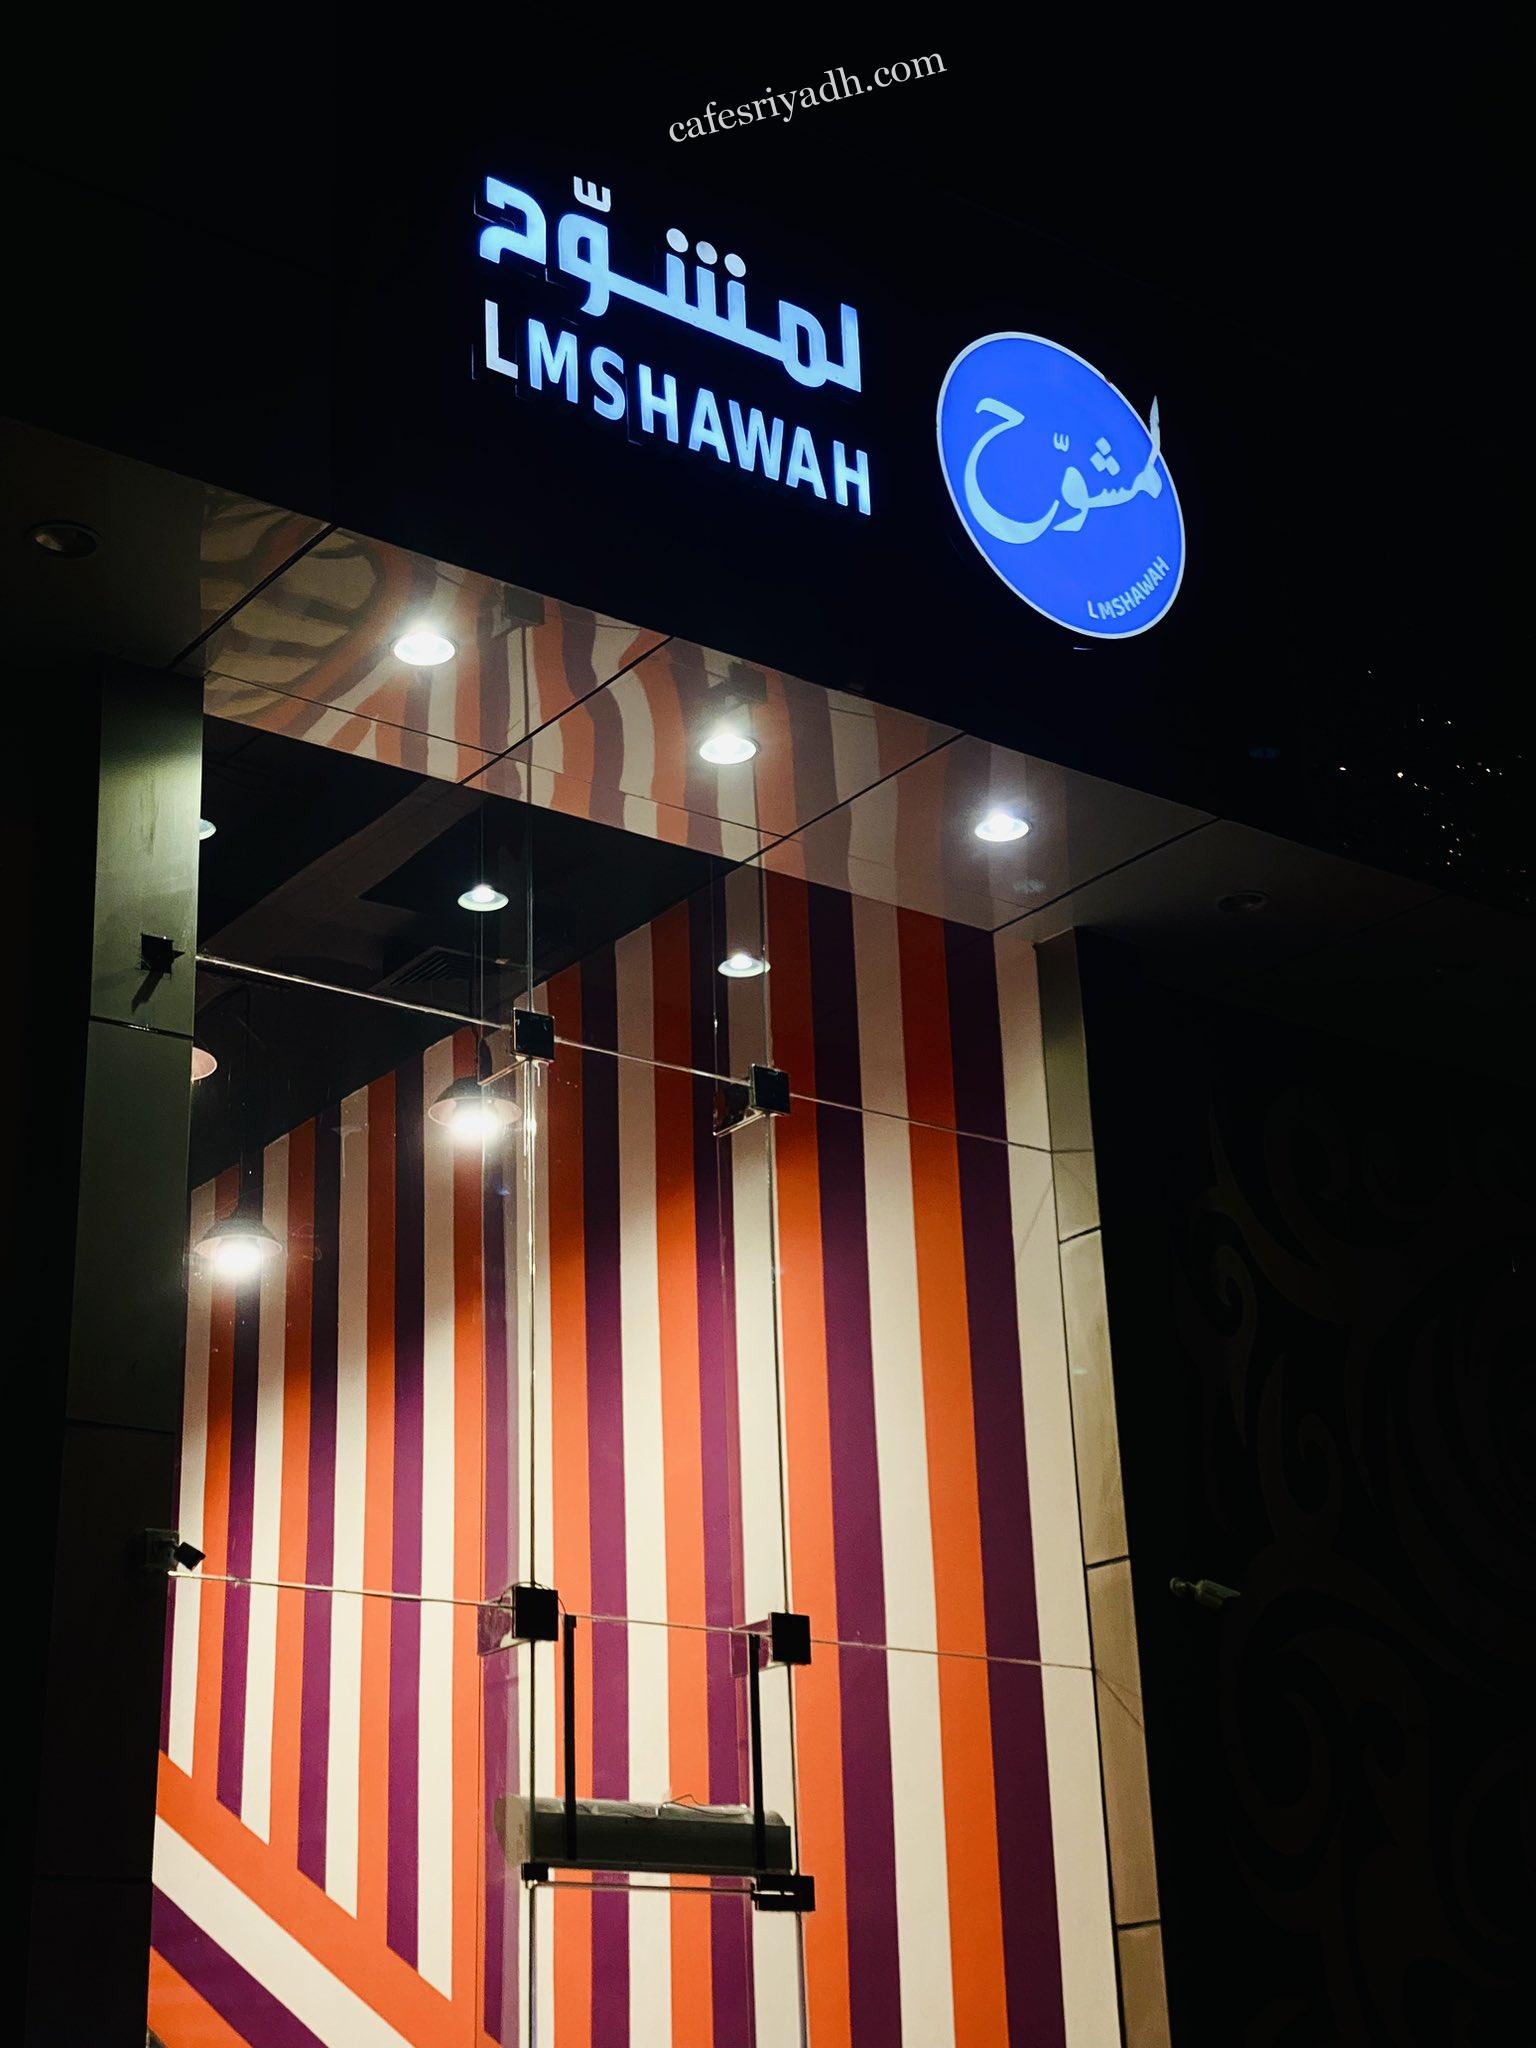 مطعم لمشوح الرياض (الأسعار + المنيو + الموقع )